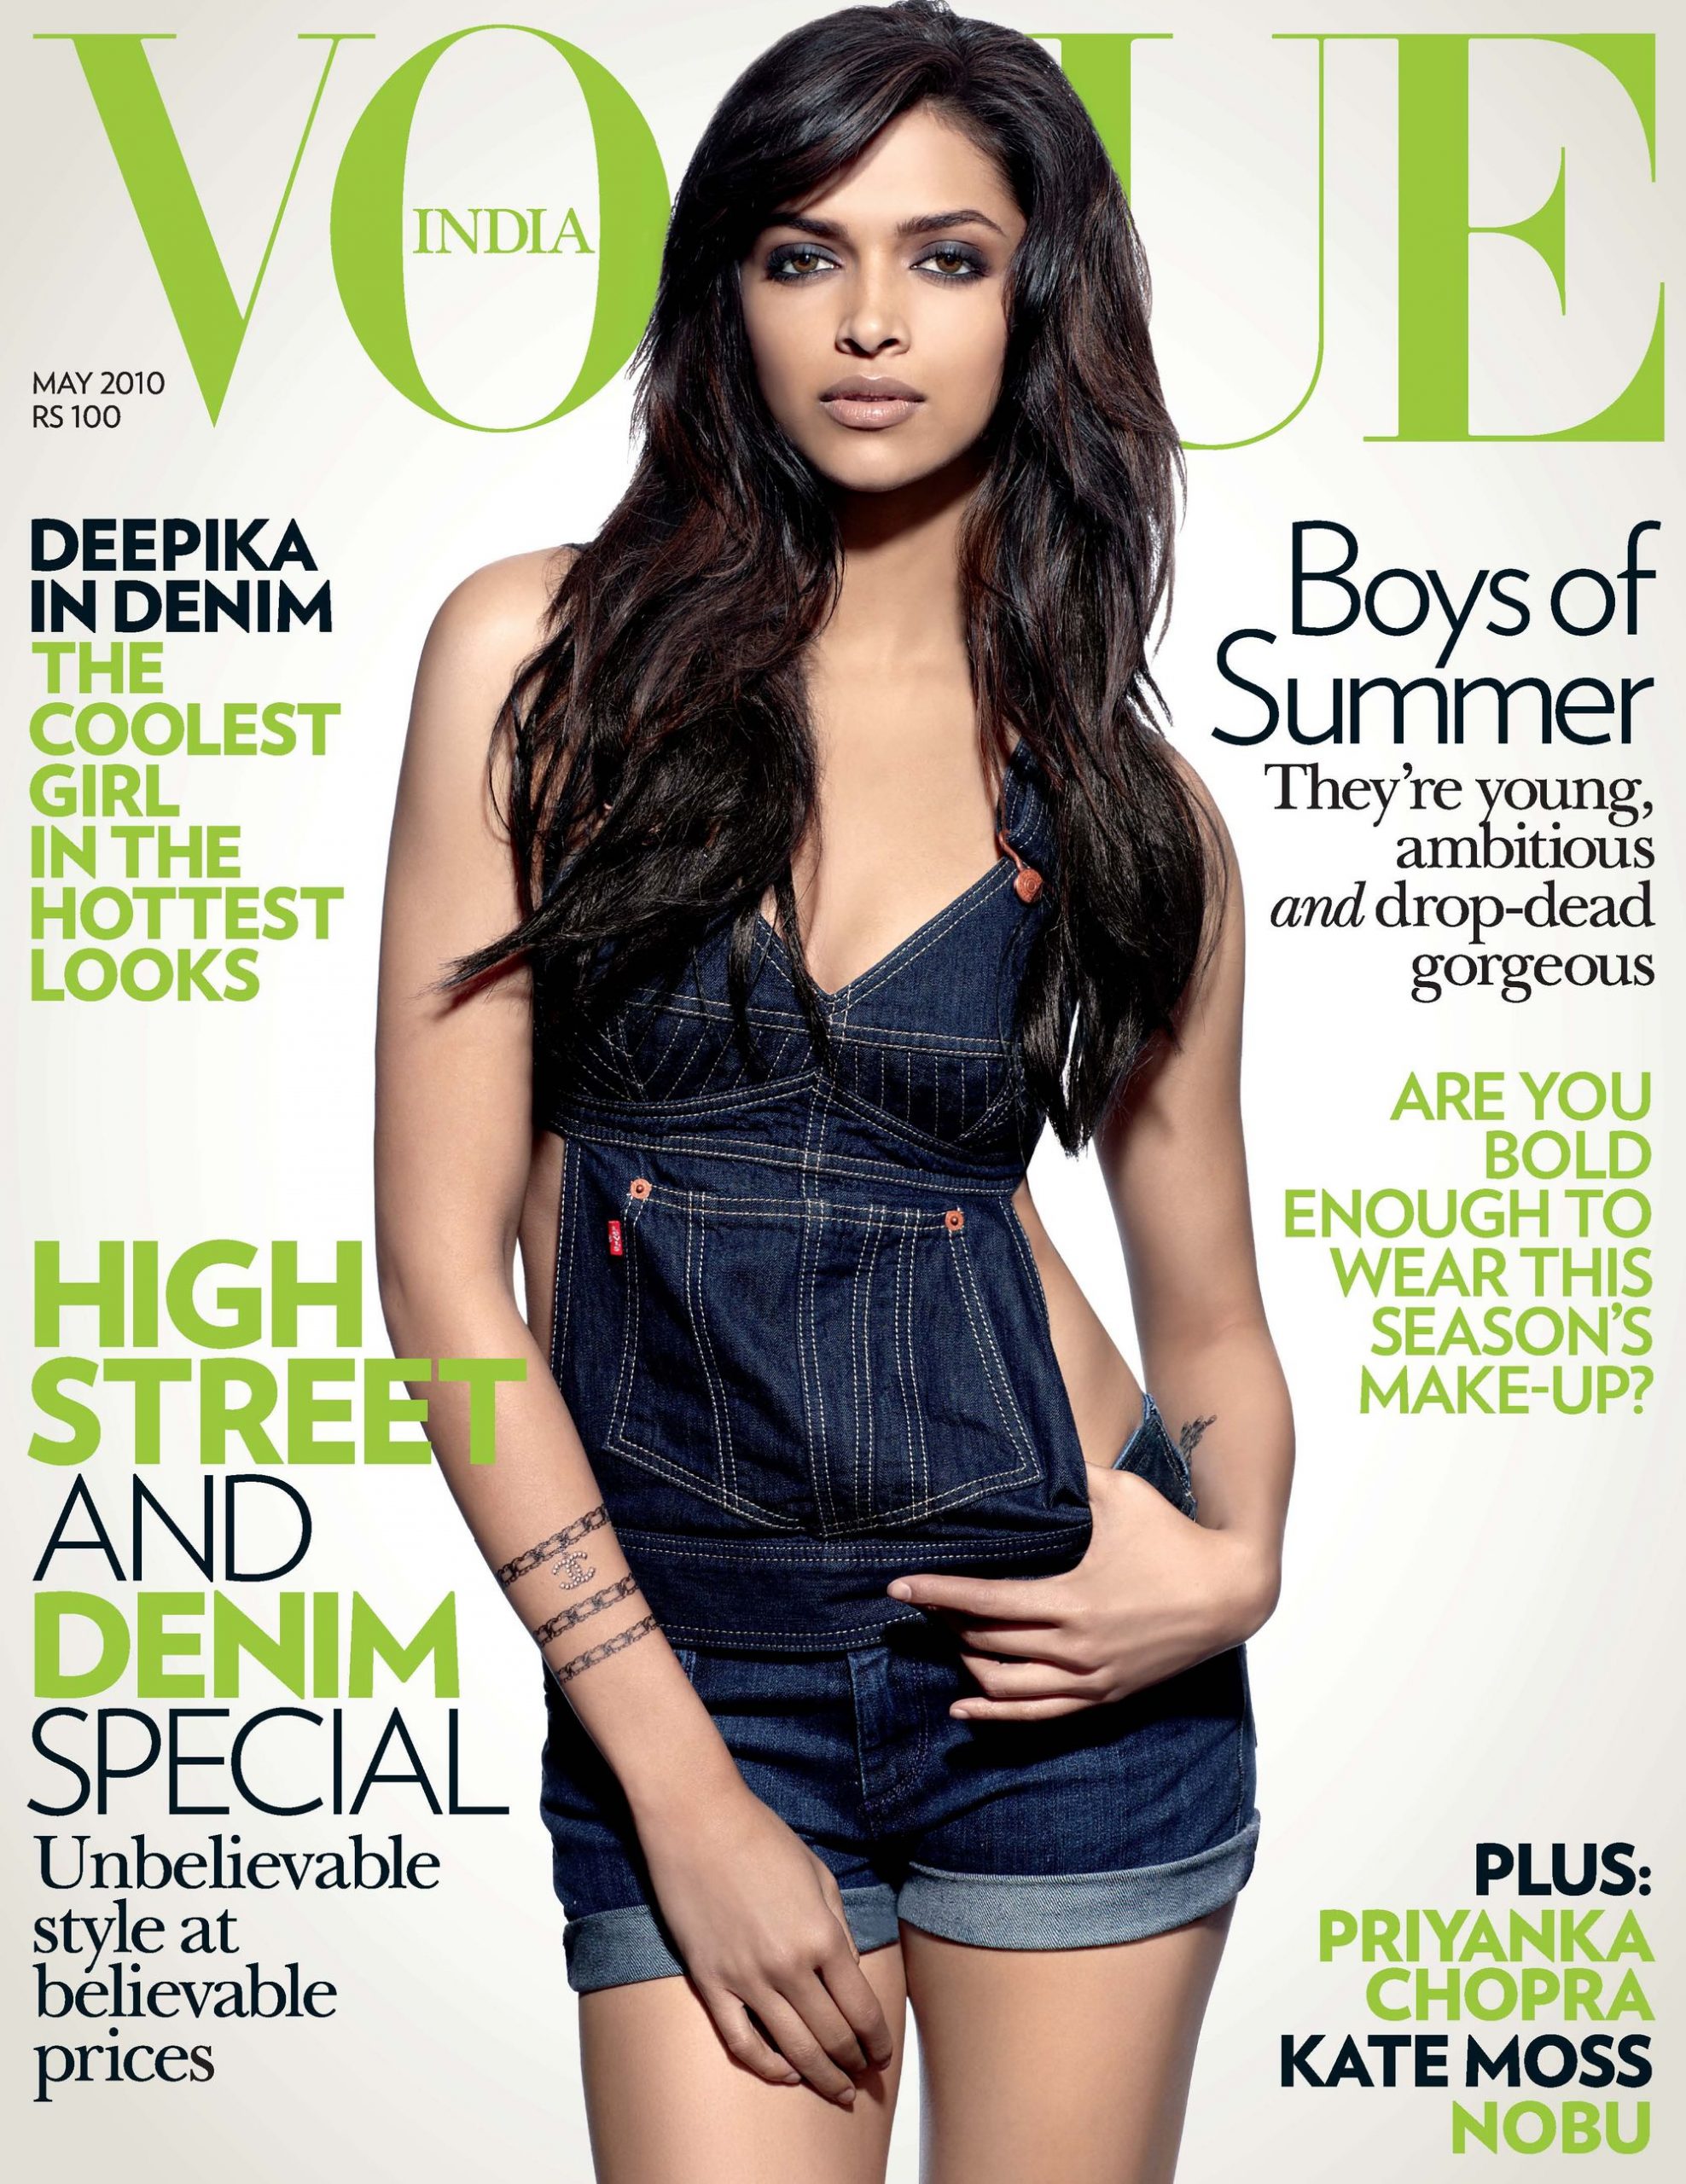 Deepika Padukone strikes a pose for Vogue!